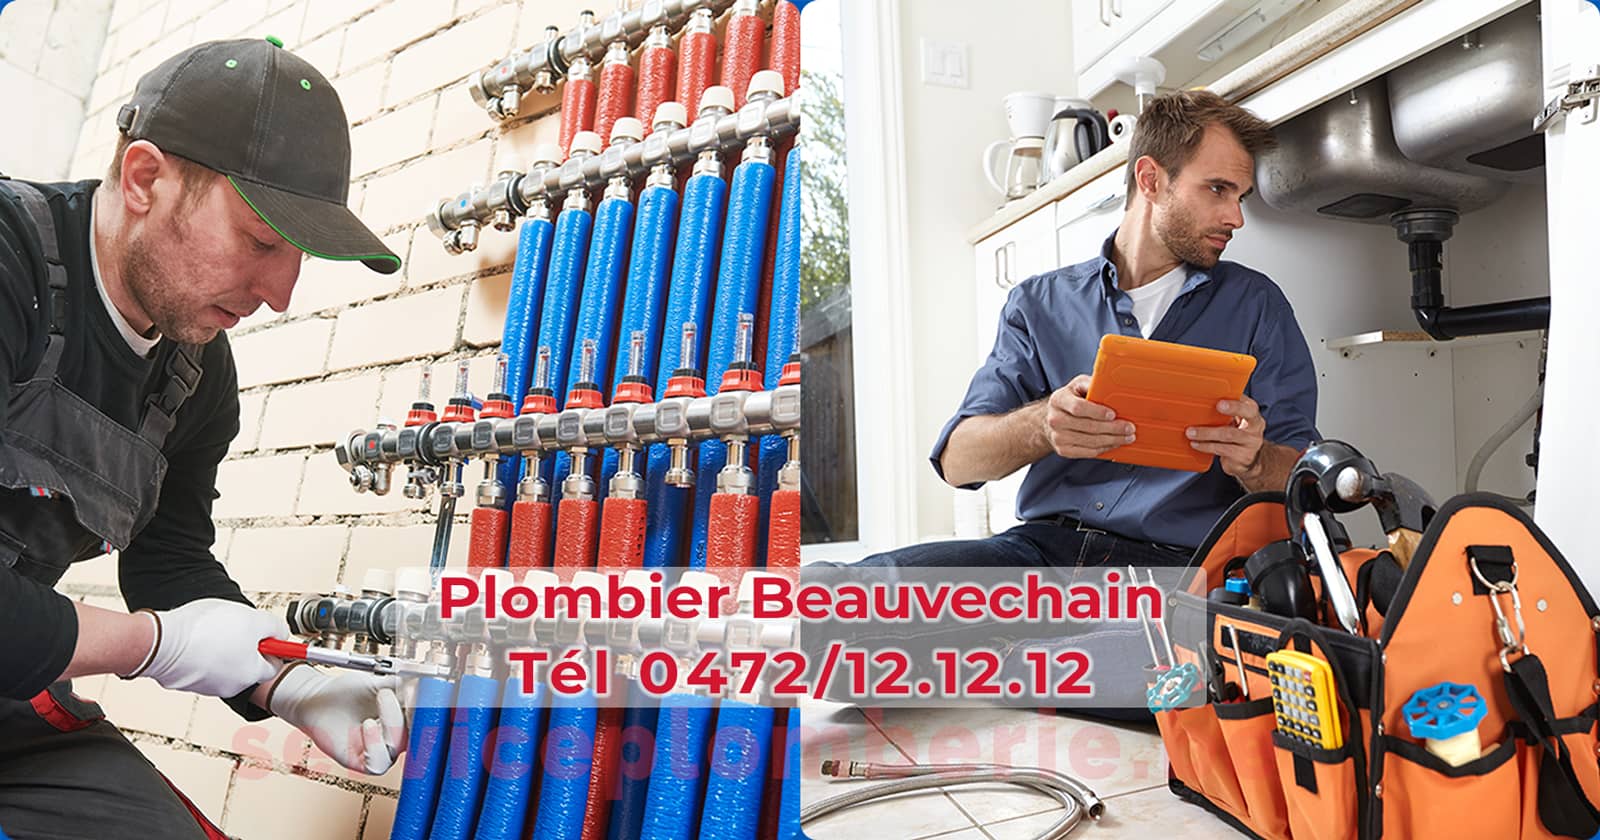 Plombier Beauvechain Agréé Professionnel Service Plomberie Tél 0472/12.12.12